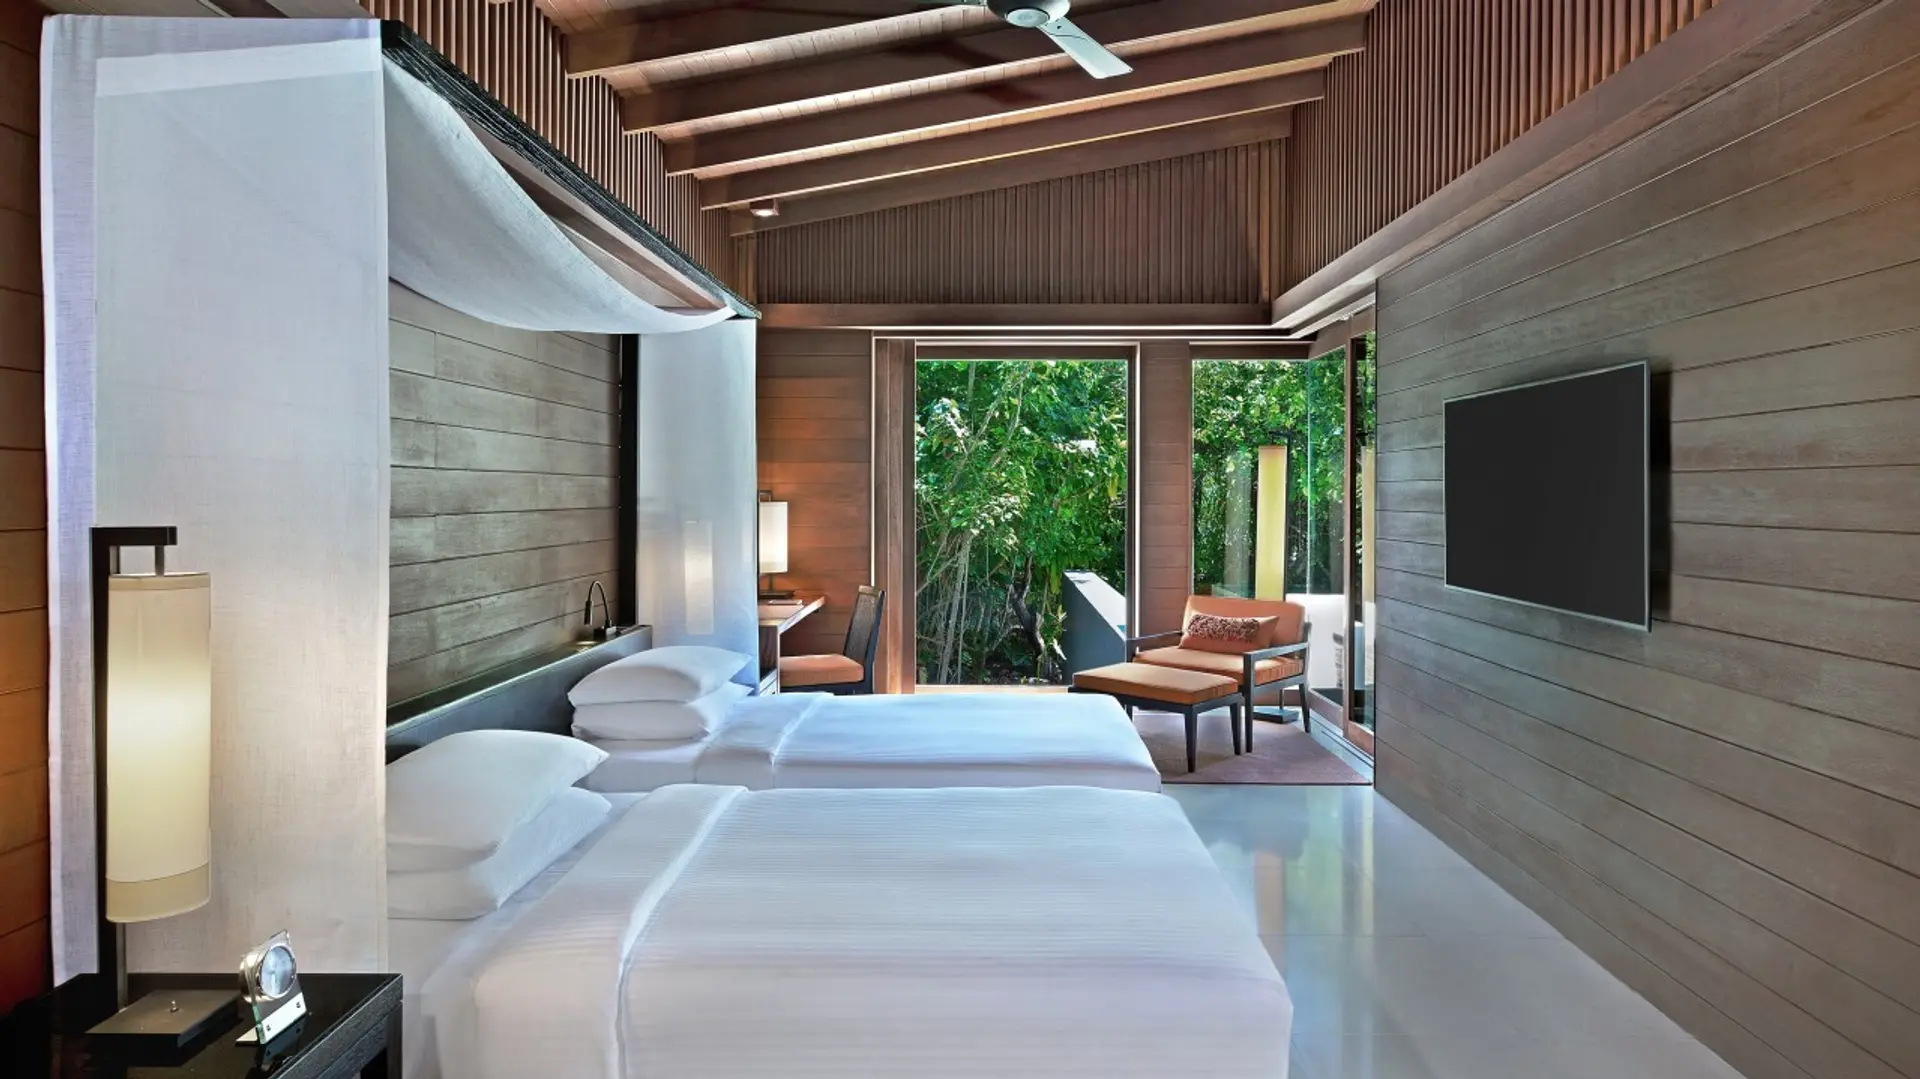 Hotel review Accommodation' - Park Hyatt Maldives Hadahaa - 4